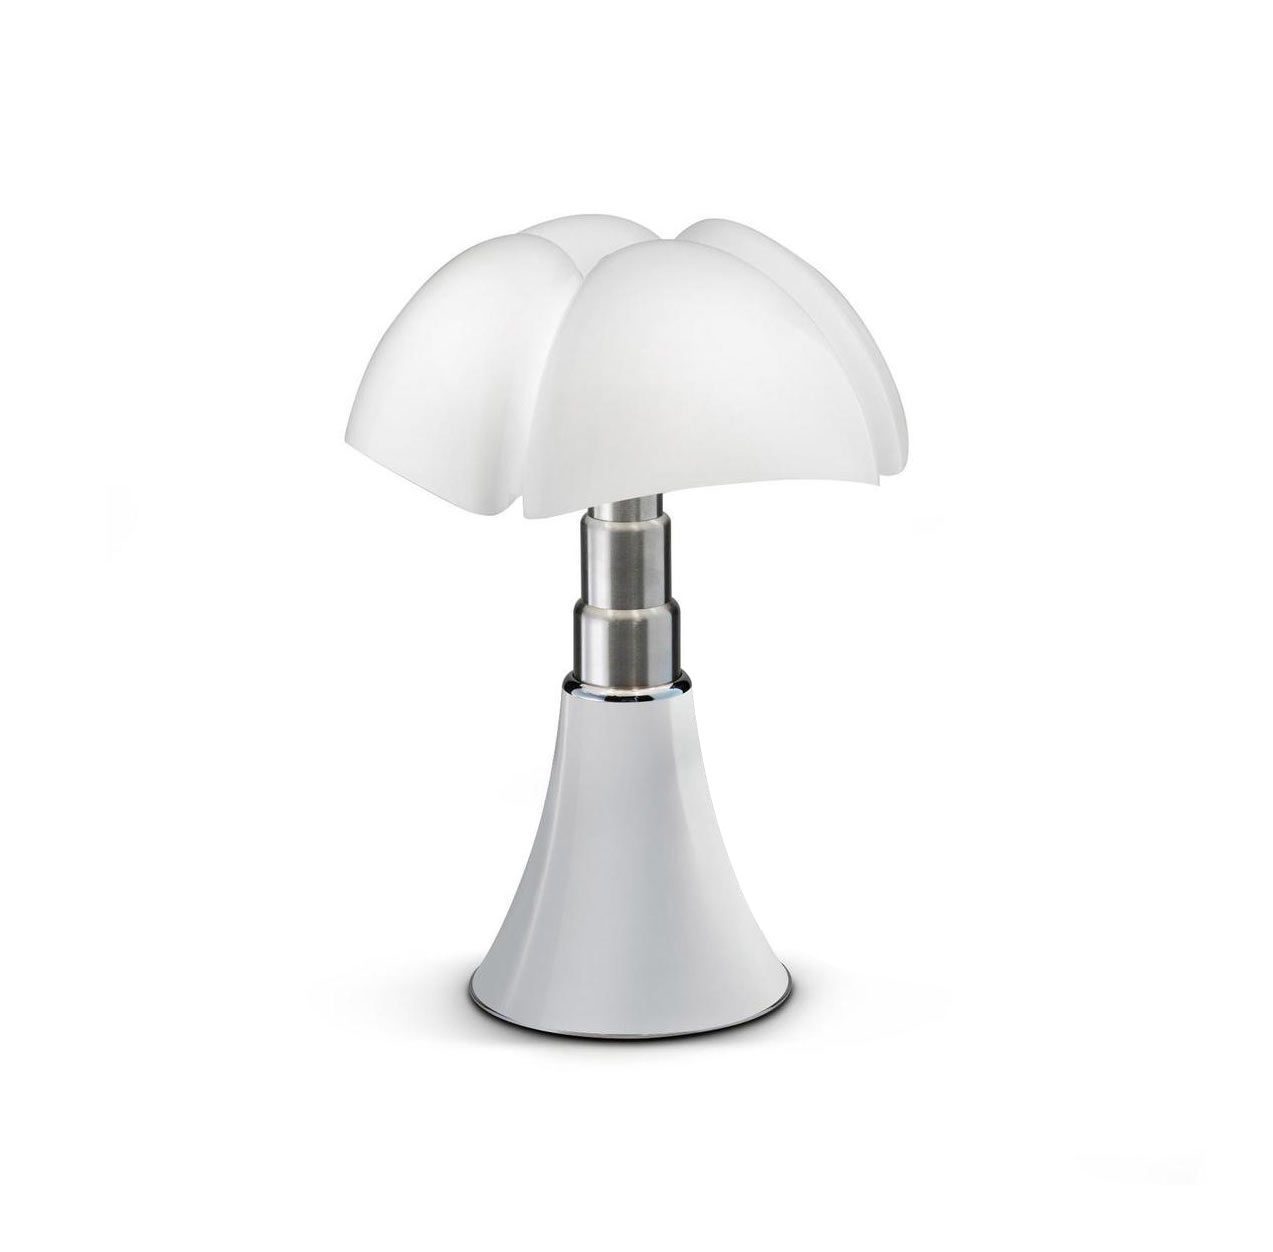 Lampe design Mini Pipistrello sans cable blanc, ampoule LED integrée, H.35cm